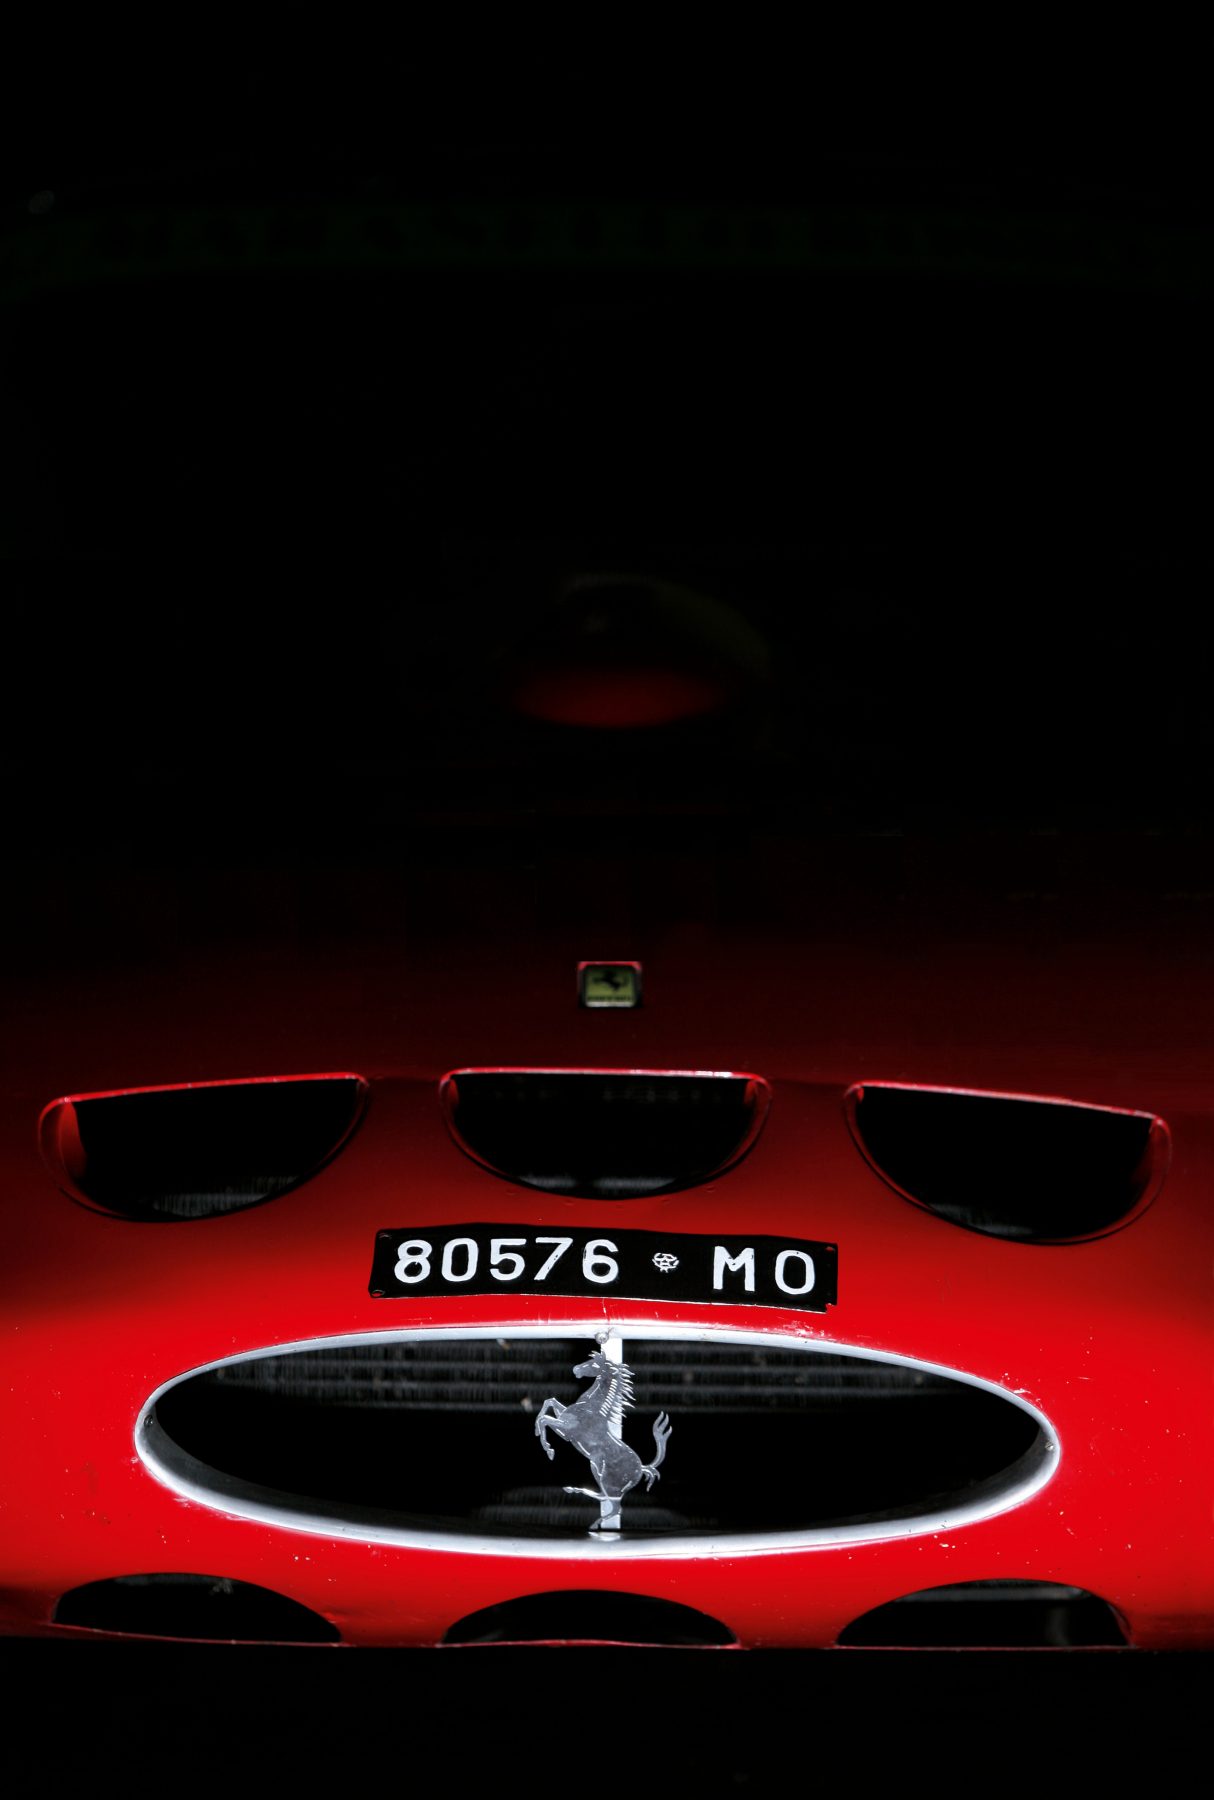 Ferrari 10